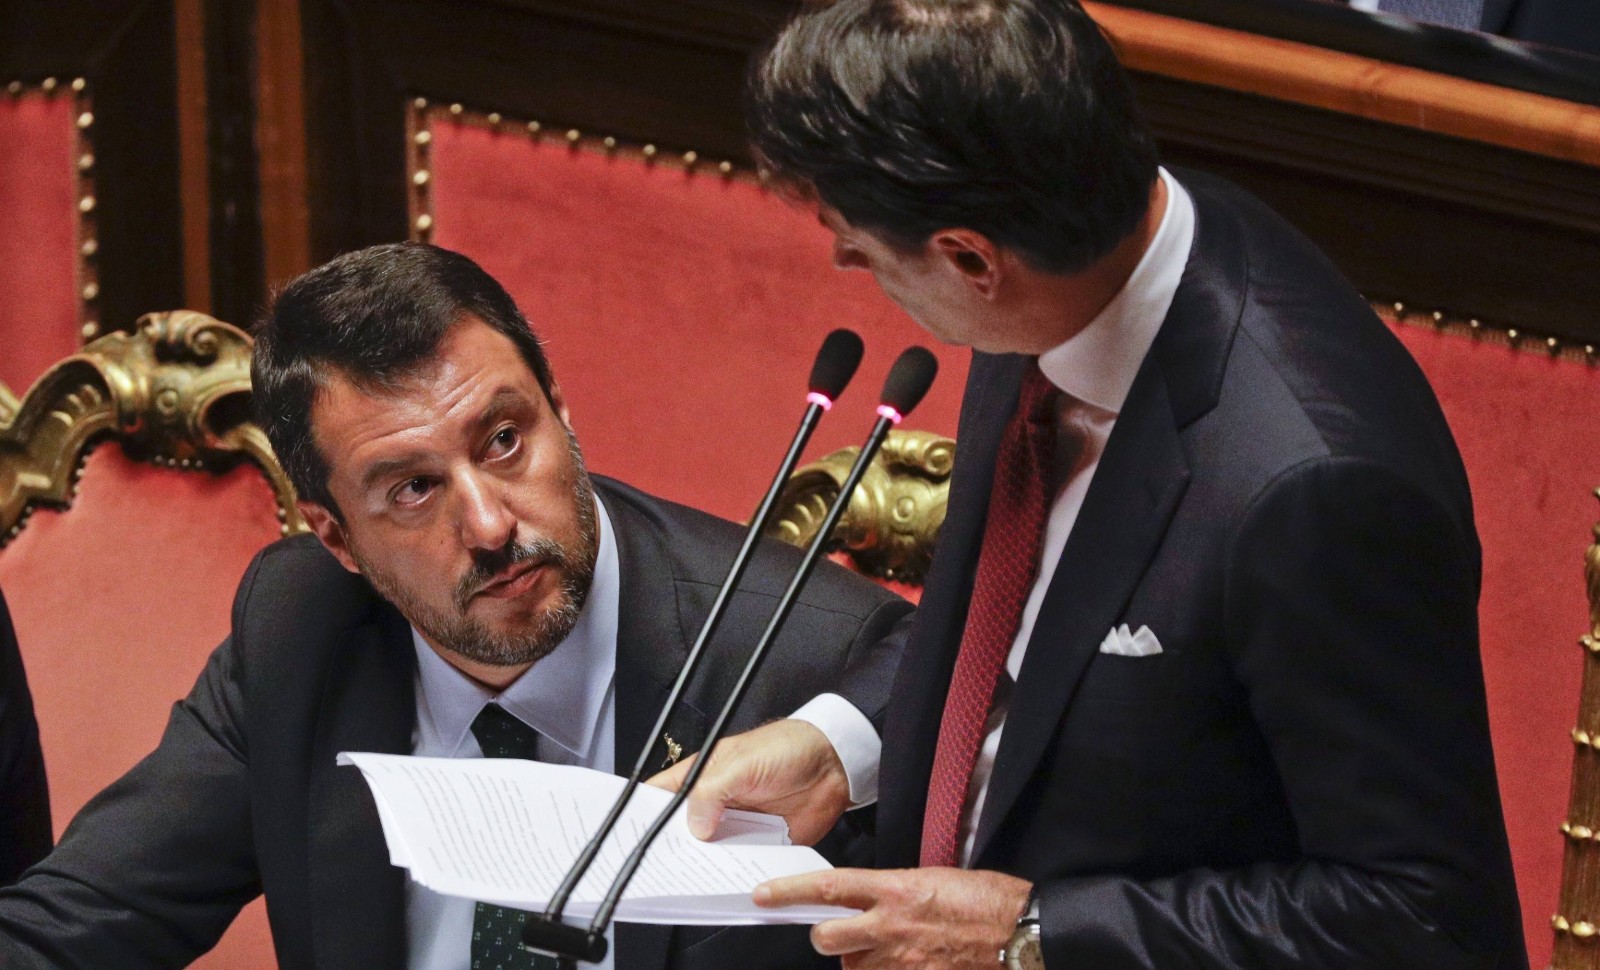 Crise italienne: le pari risqué de Salvini